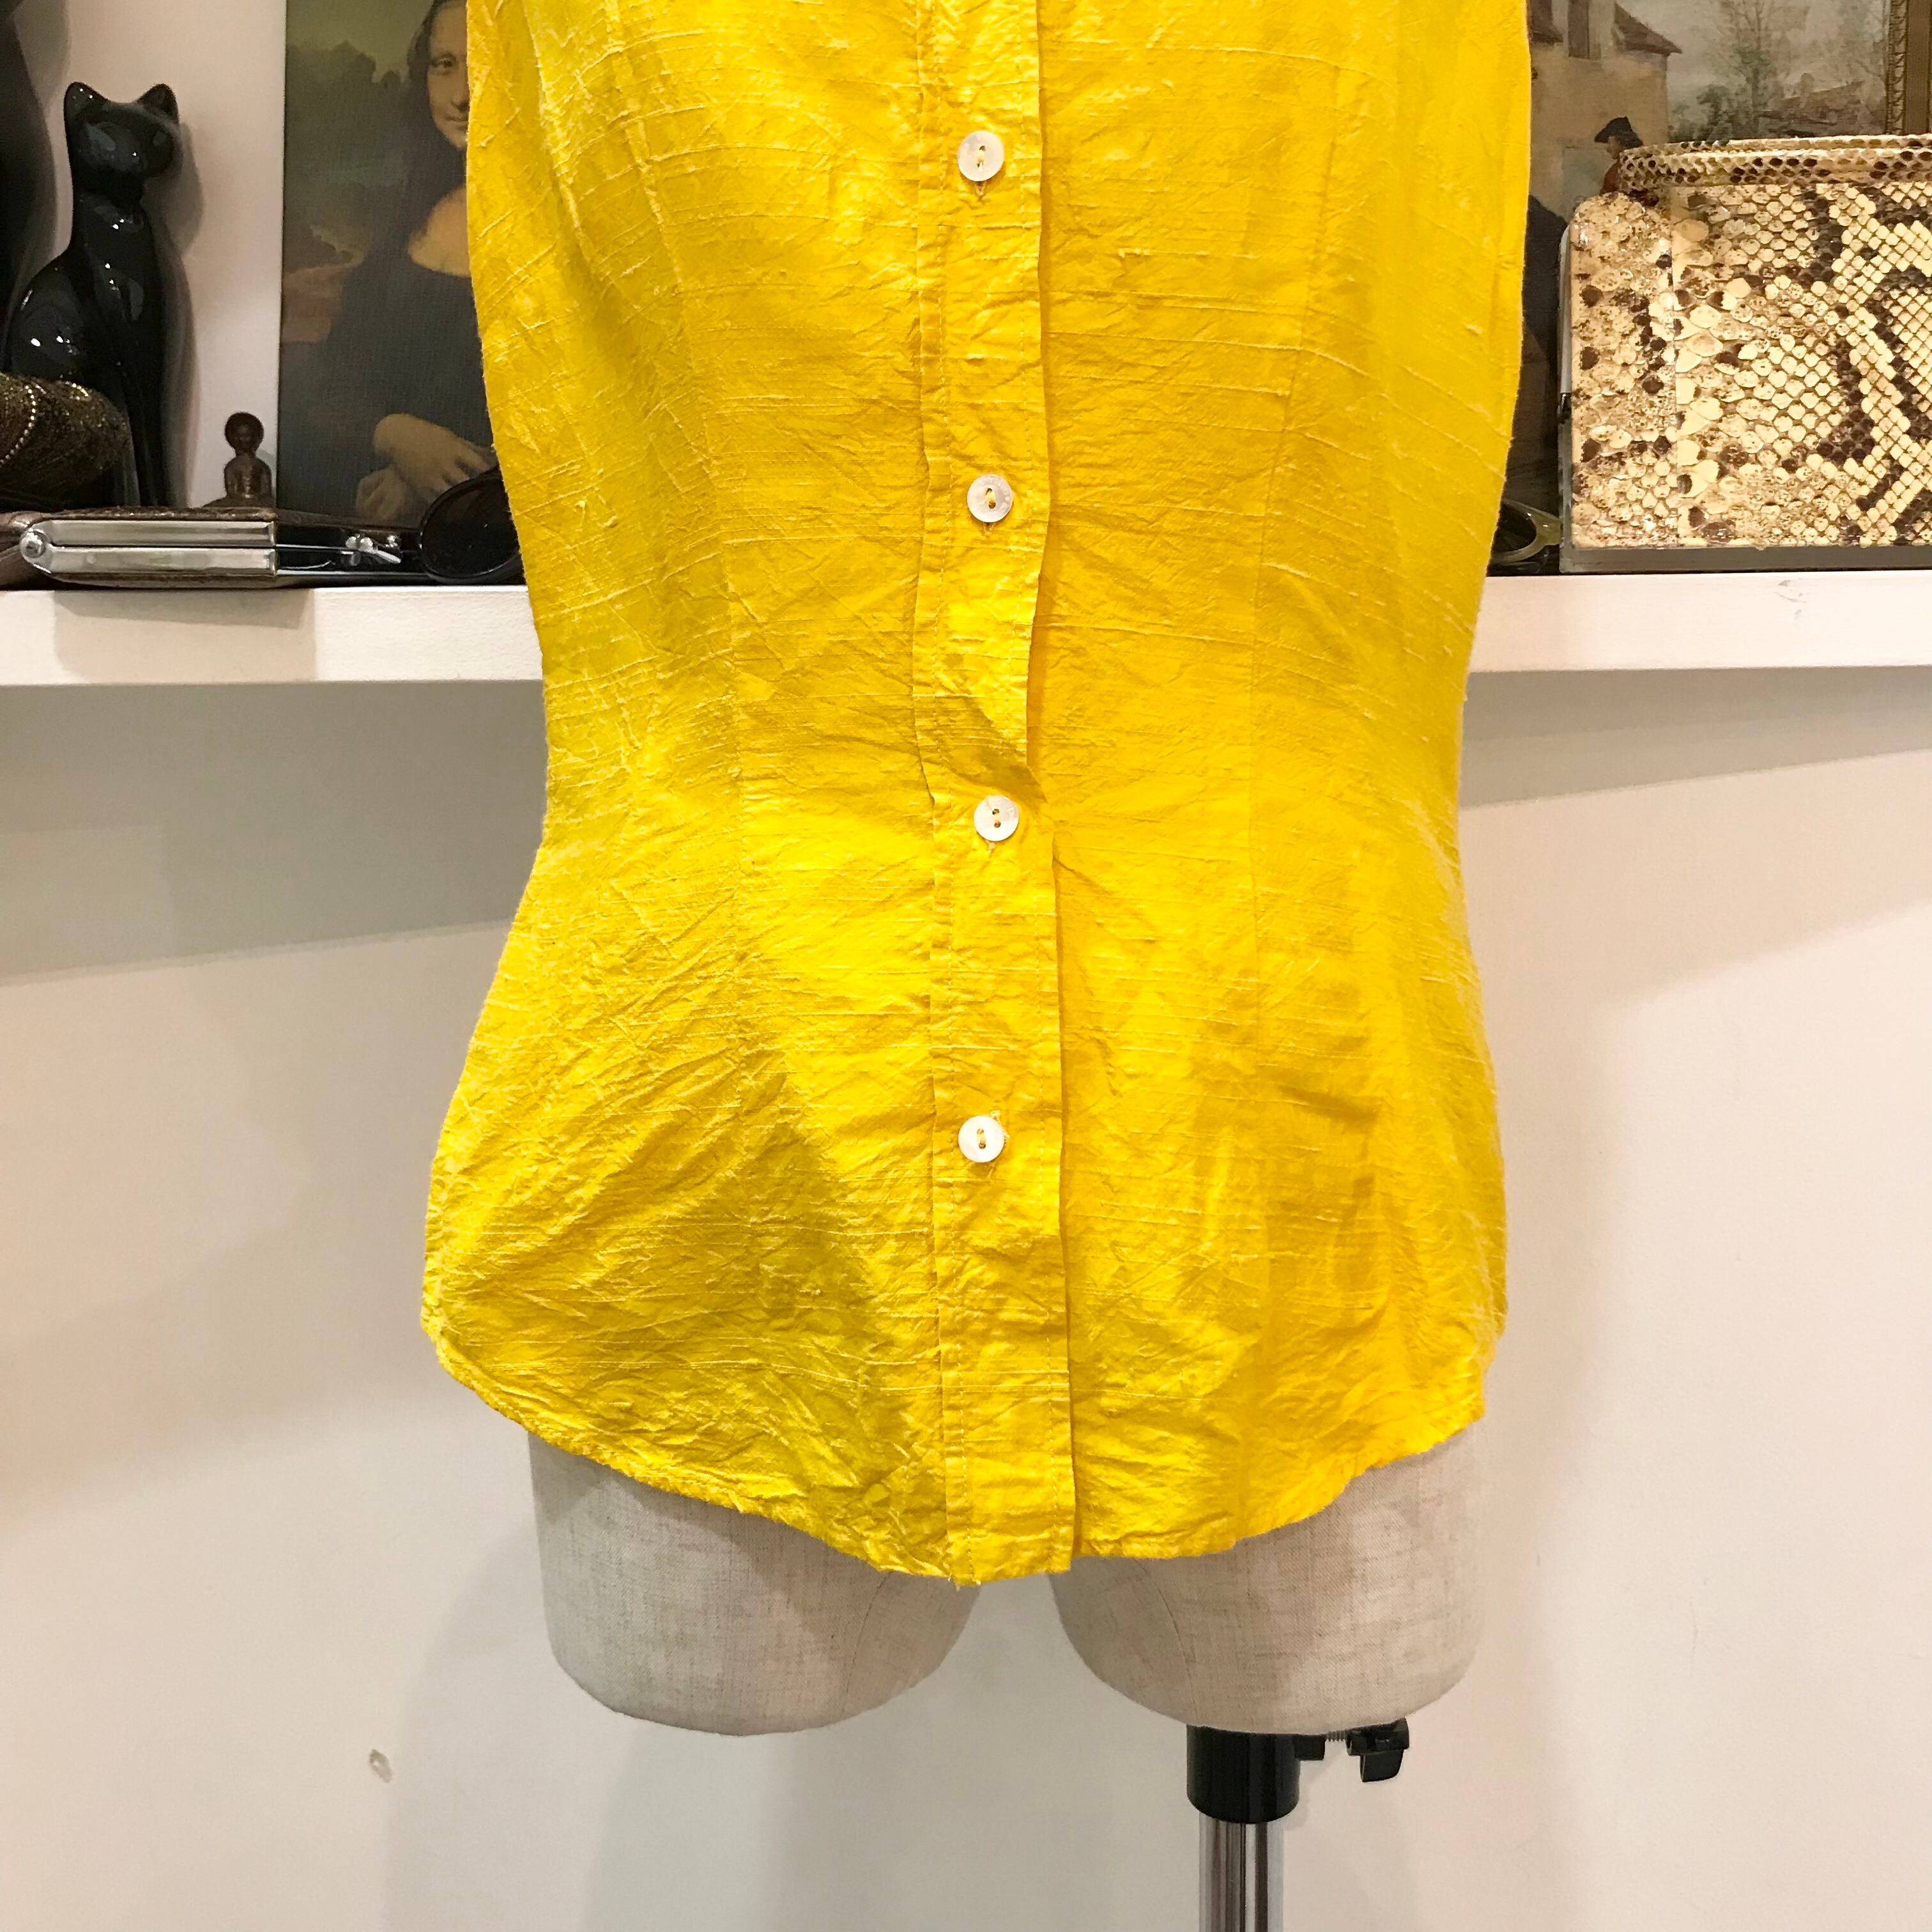 D&G/dolce&gabbana/tops/shirt/38/yellow/ドルチェアンドガッパーナ